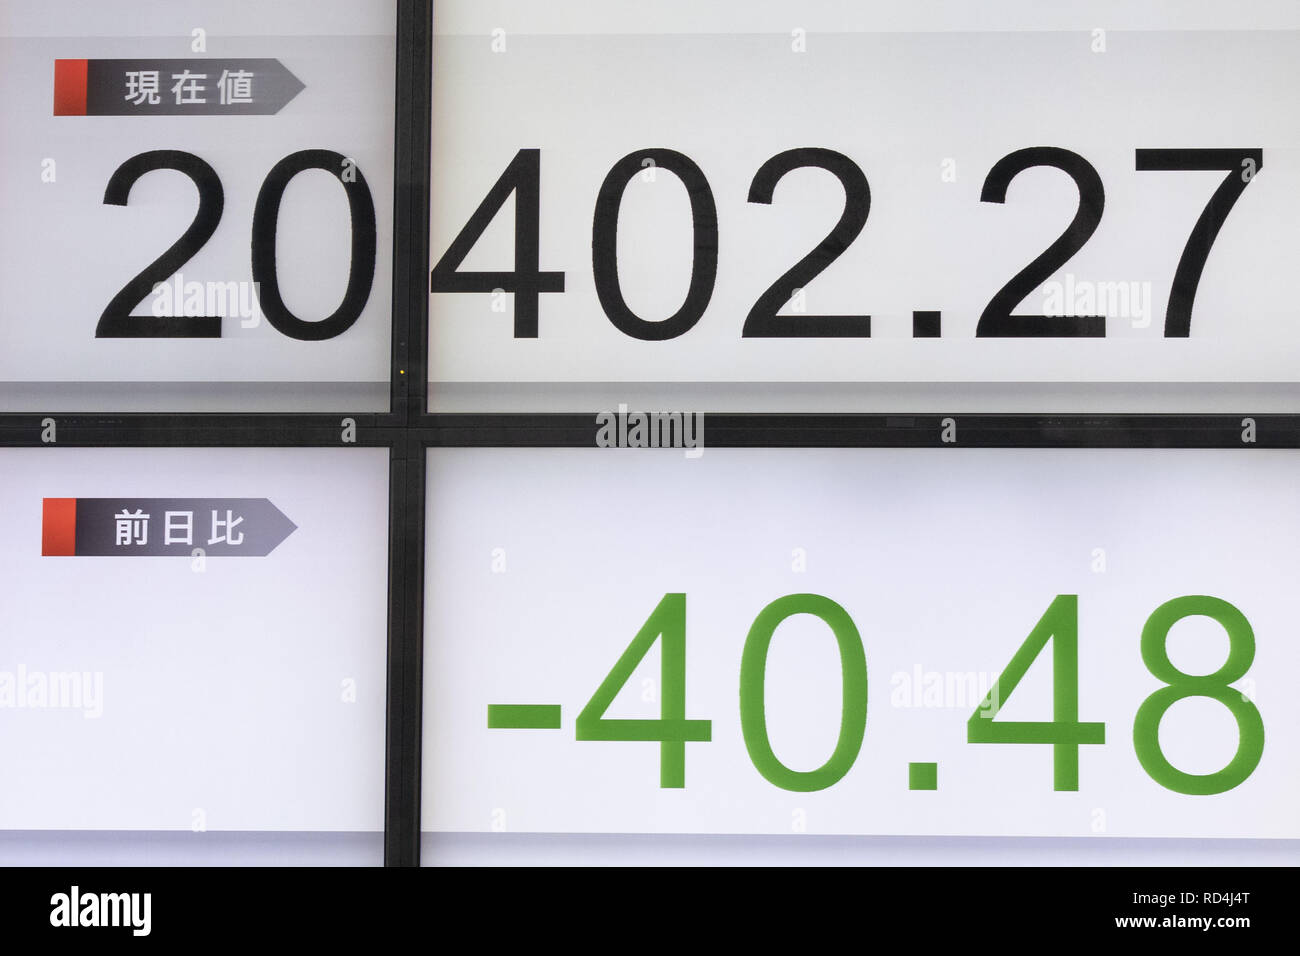 Enero 17, 2019 - Tokio, Japón - un tablero electrónico de valores muestra el Japón el Nikkei Stock promedio, que terminó abajo 40.48 puntos o 0.20 por ciento para cerrar en 20,402.27. El más amplio Topix índice agregado 0,35 por ciento o 5,43 puntos hasta situarse en 1,543.20. (Crédito de la Imagen: © Rodrigo Reyes Marin/ZUMA Wire) Foto de stock